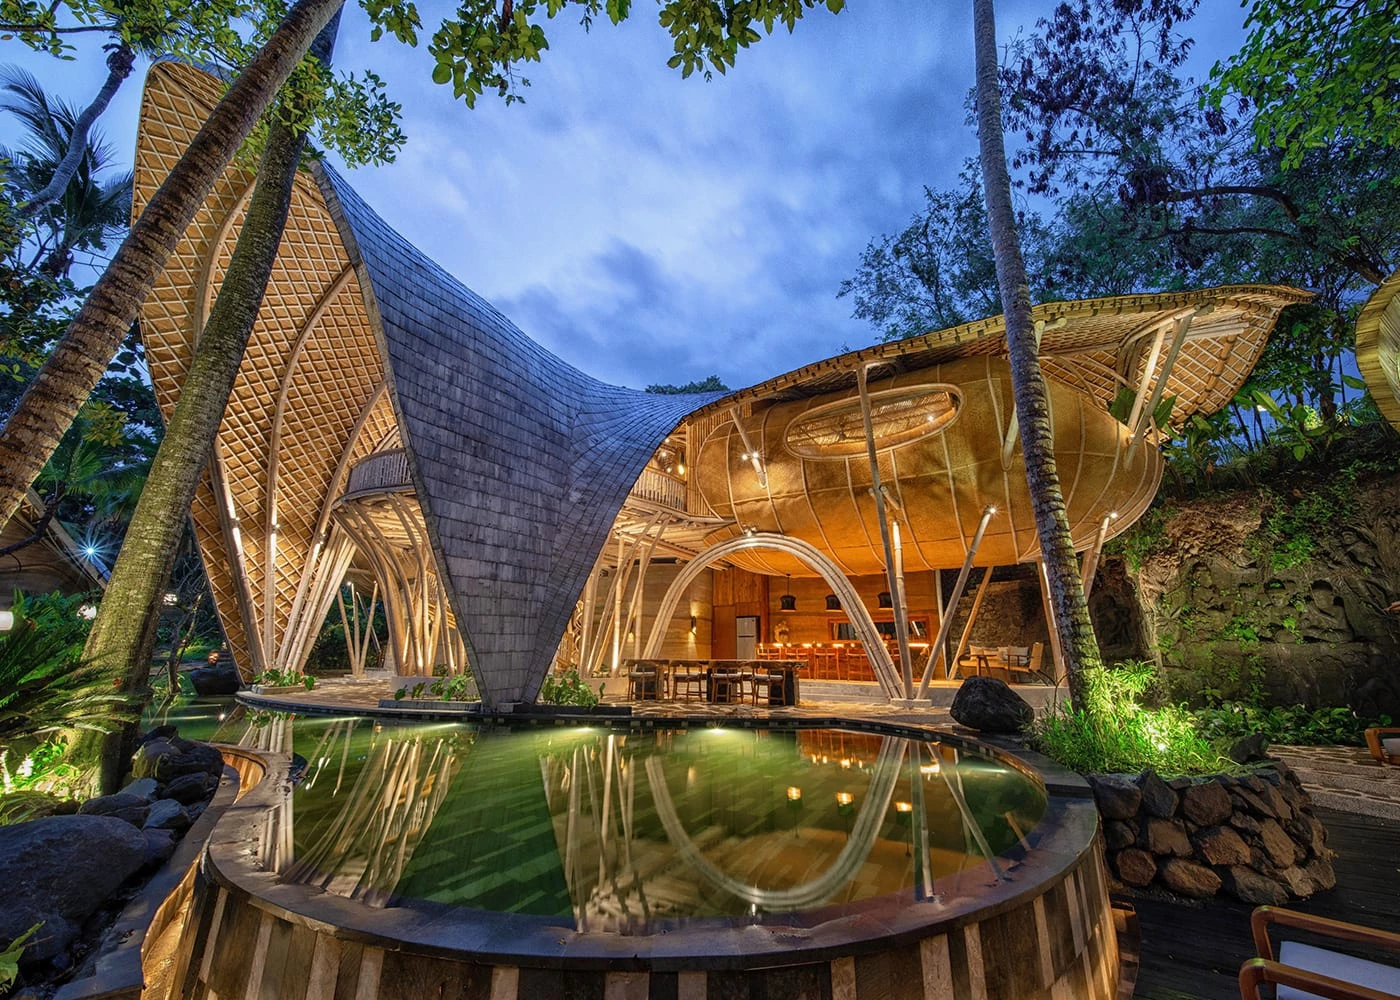 Kỳ nghỉ dưỡng thân thiện với môi trường không còn là những tưởng tượng về phòng khách sạn đơn sơ, mộc mạc. Khu nghỉ dưỡng Ulaman Eco hạng sang bậc nhất Bali, Indonesia sẽ làm hài lòng mọi du khách khi hòa mình vào thiên nhiên, nội thất gỗ, tre nứa mà không kém phần xa hoa, sang trọng. Ảnh: HoneyCombers.